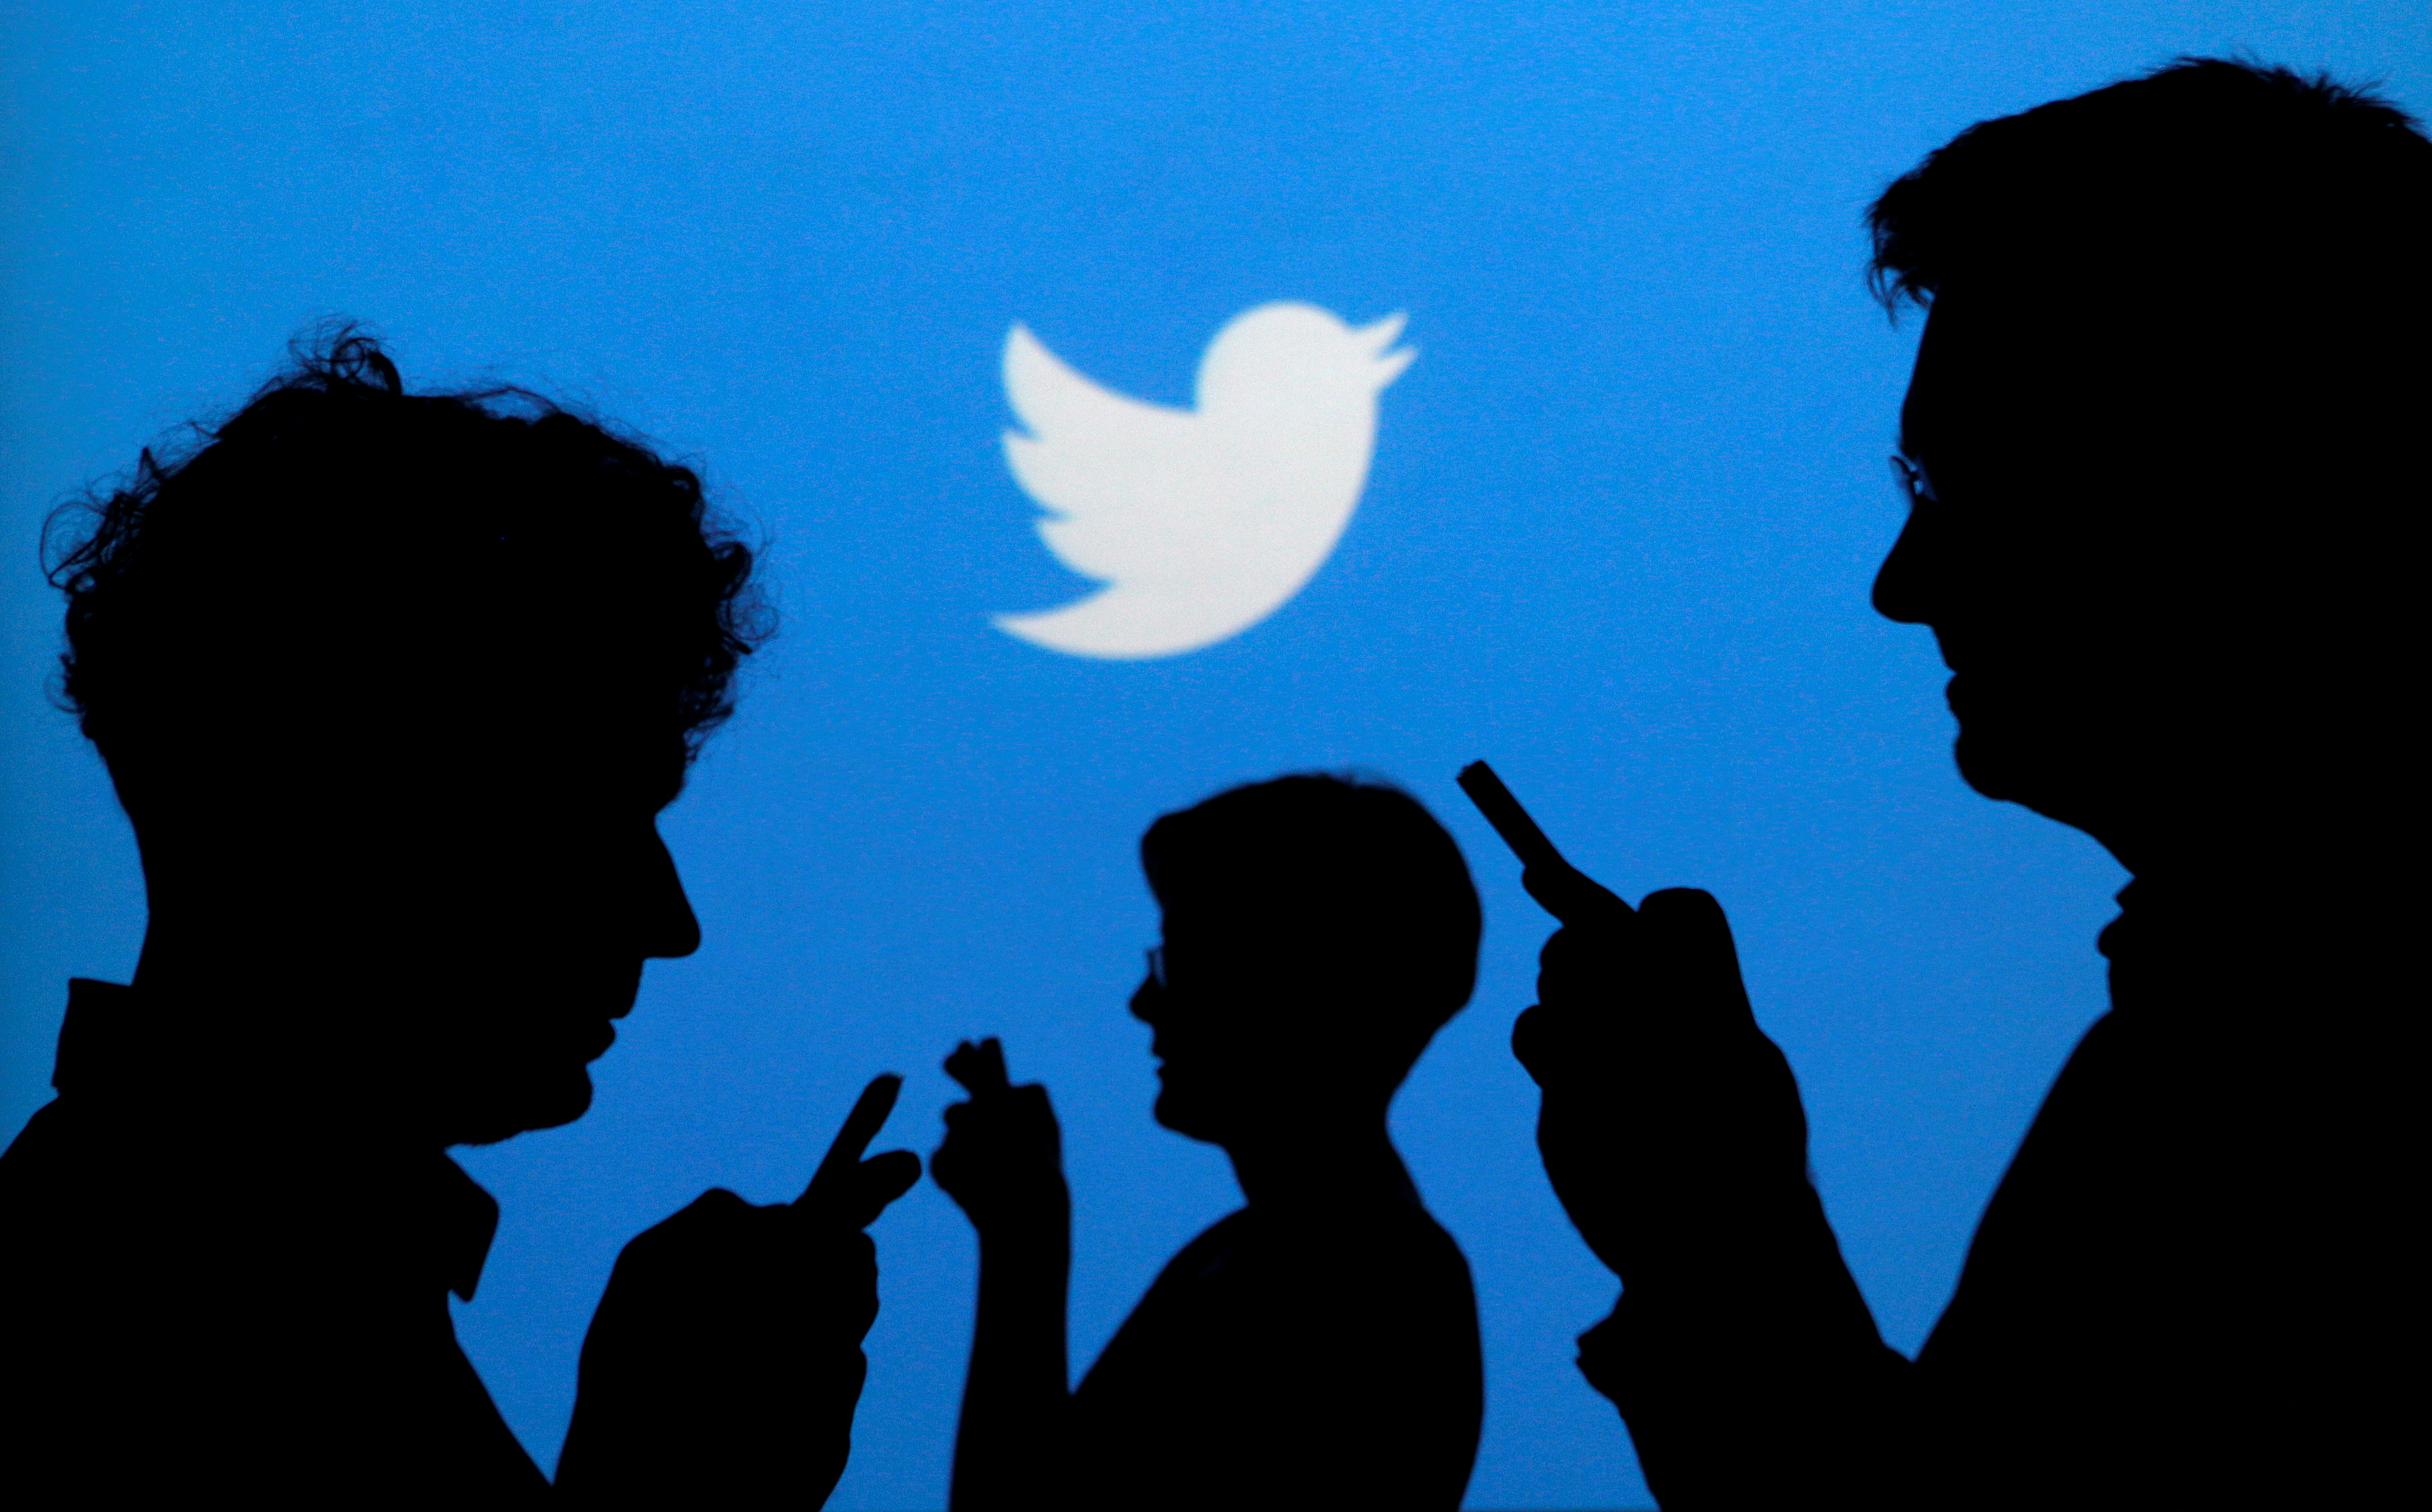 Los usuarios de Twitter se mostraron felices de que su aplicación continuara funcionando (Foto: REUTERS/Kacper Pempel/File Photo)